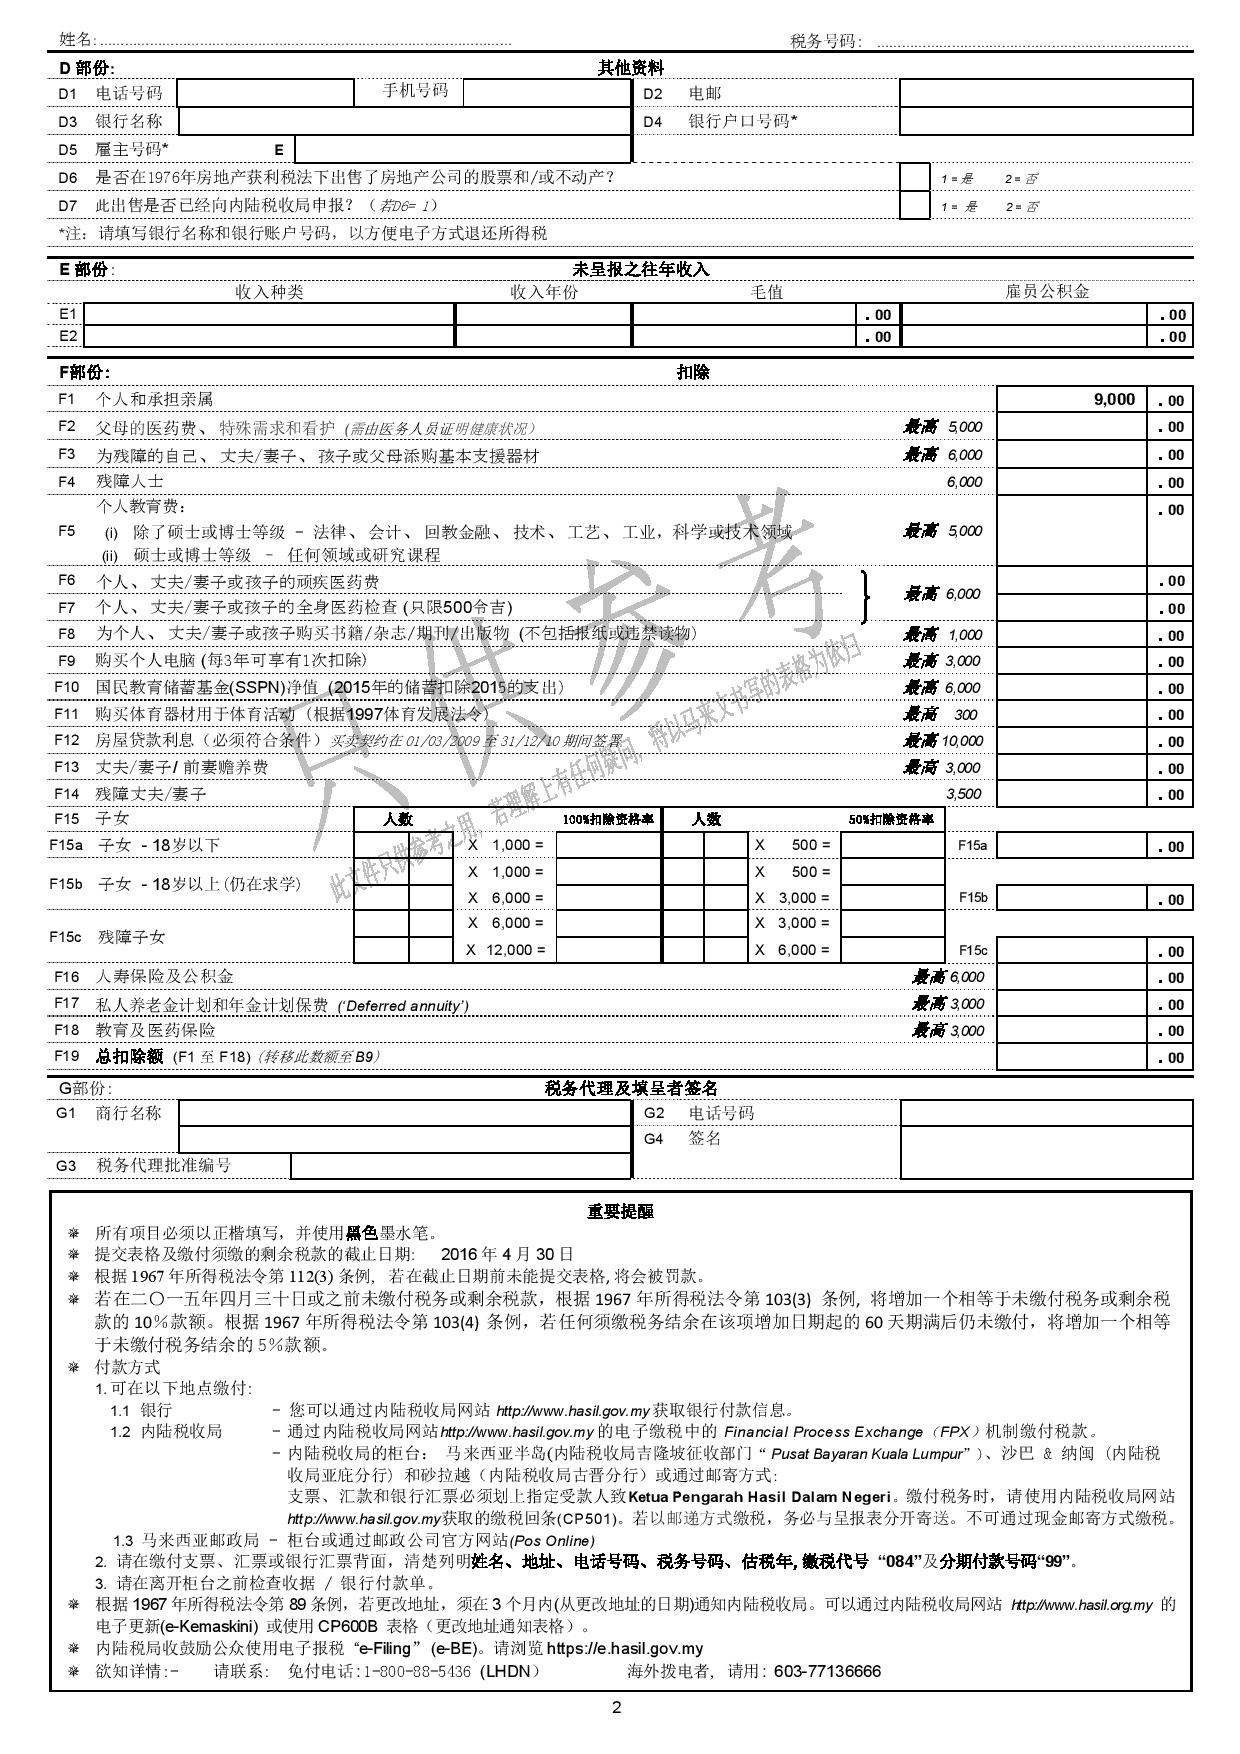 看不懂复杂的个人报税表？没关系，这里有官方中文版本！